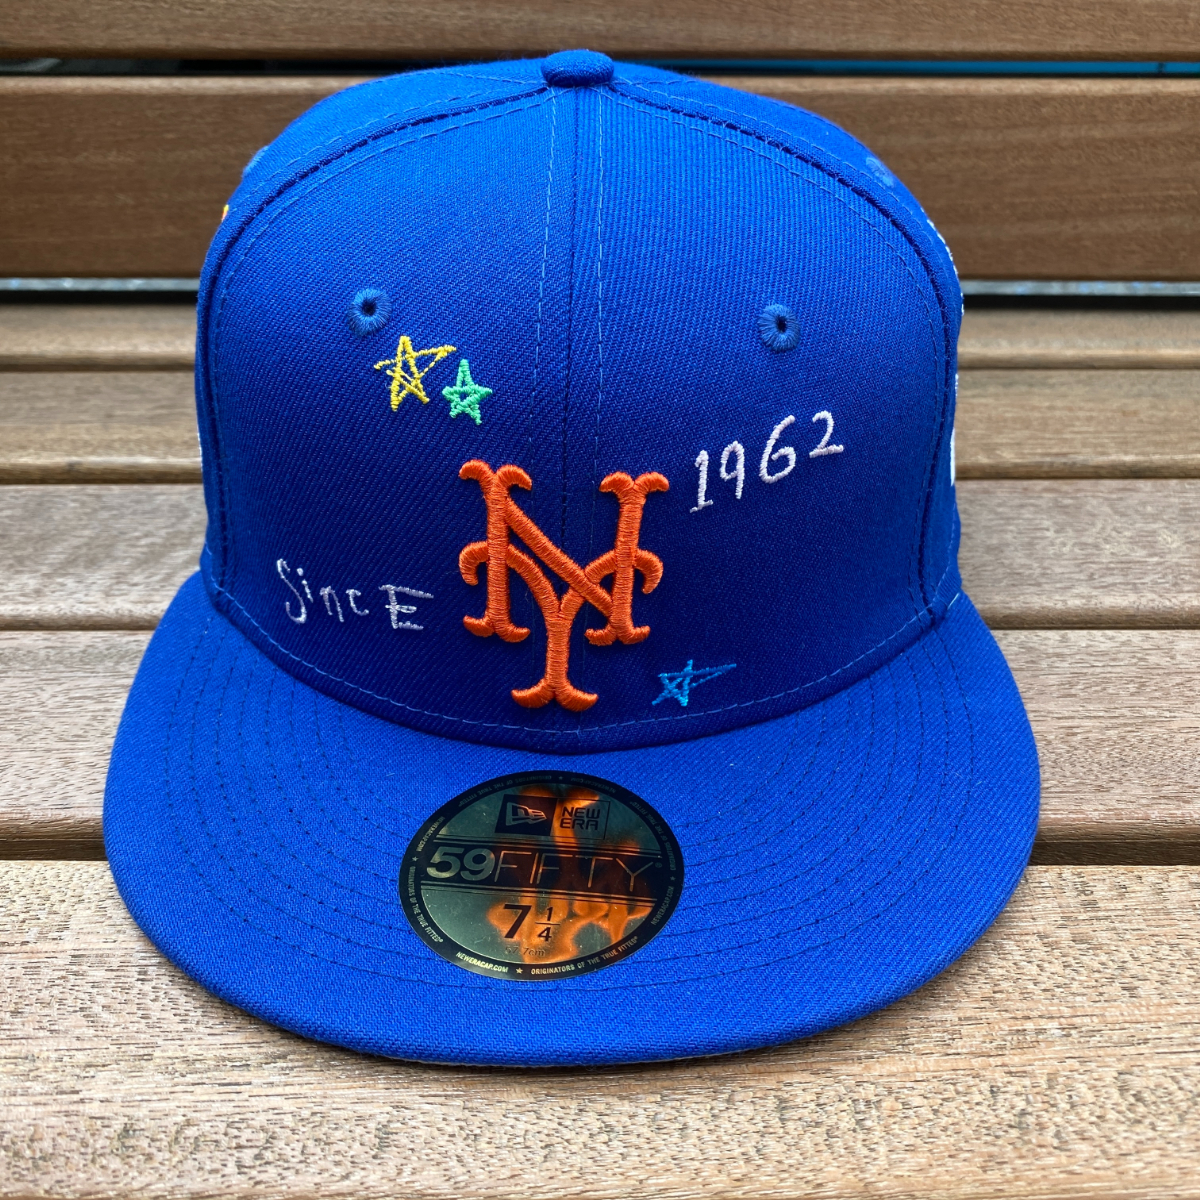 激レア USA限定 【7.1/4】 NEWERA ニューエラ 59FIFTY ニューヨーク メッツ NY Mets スクリブル Scribble 落書き MLB ワールドシリーズ_画像3